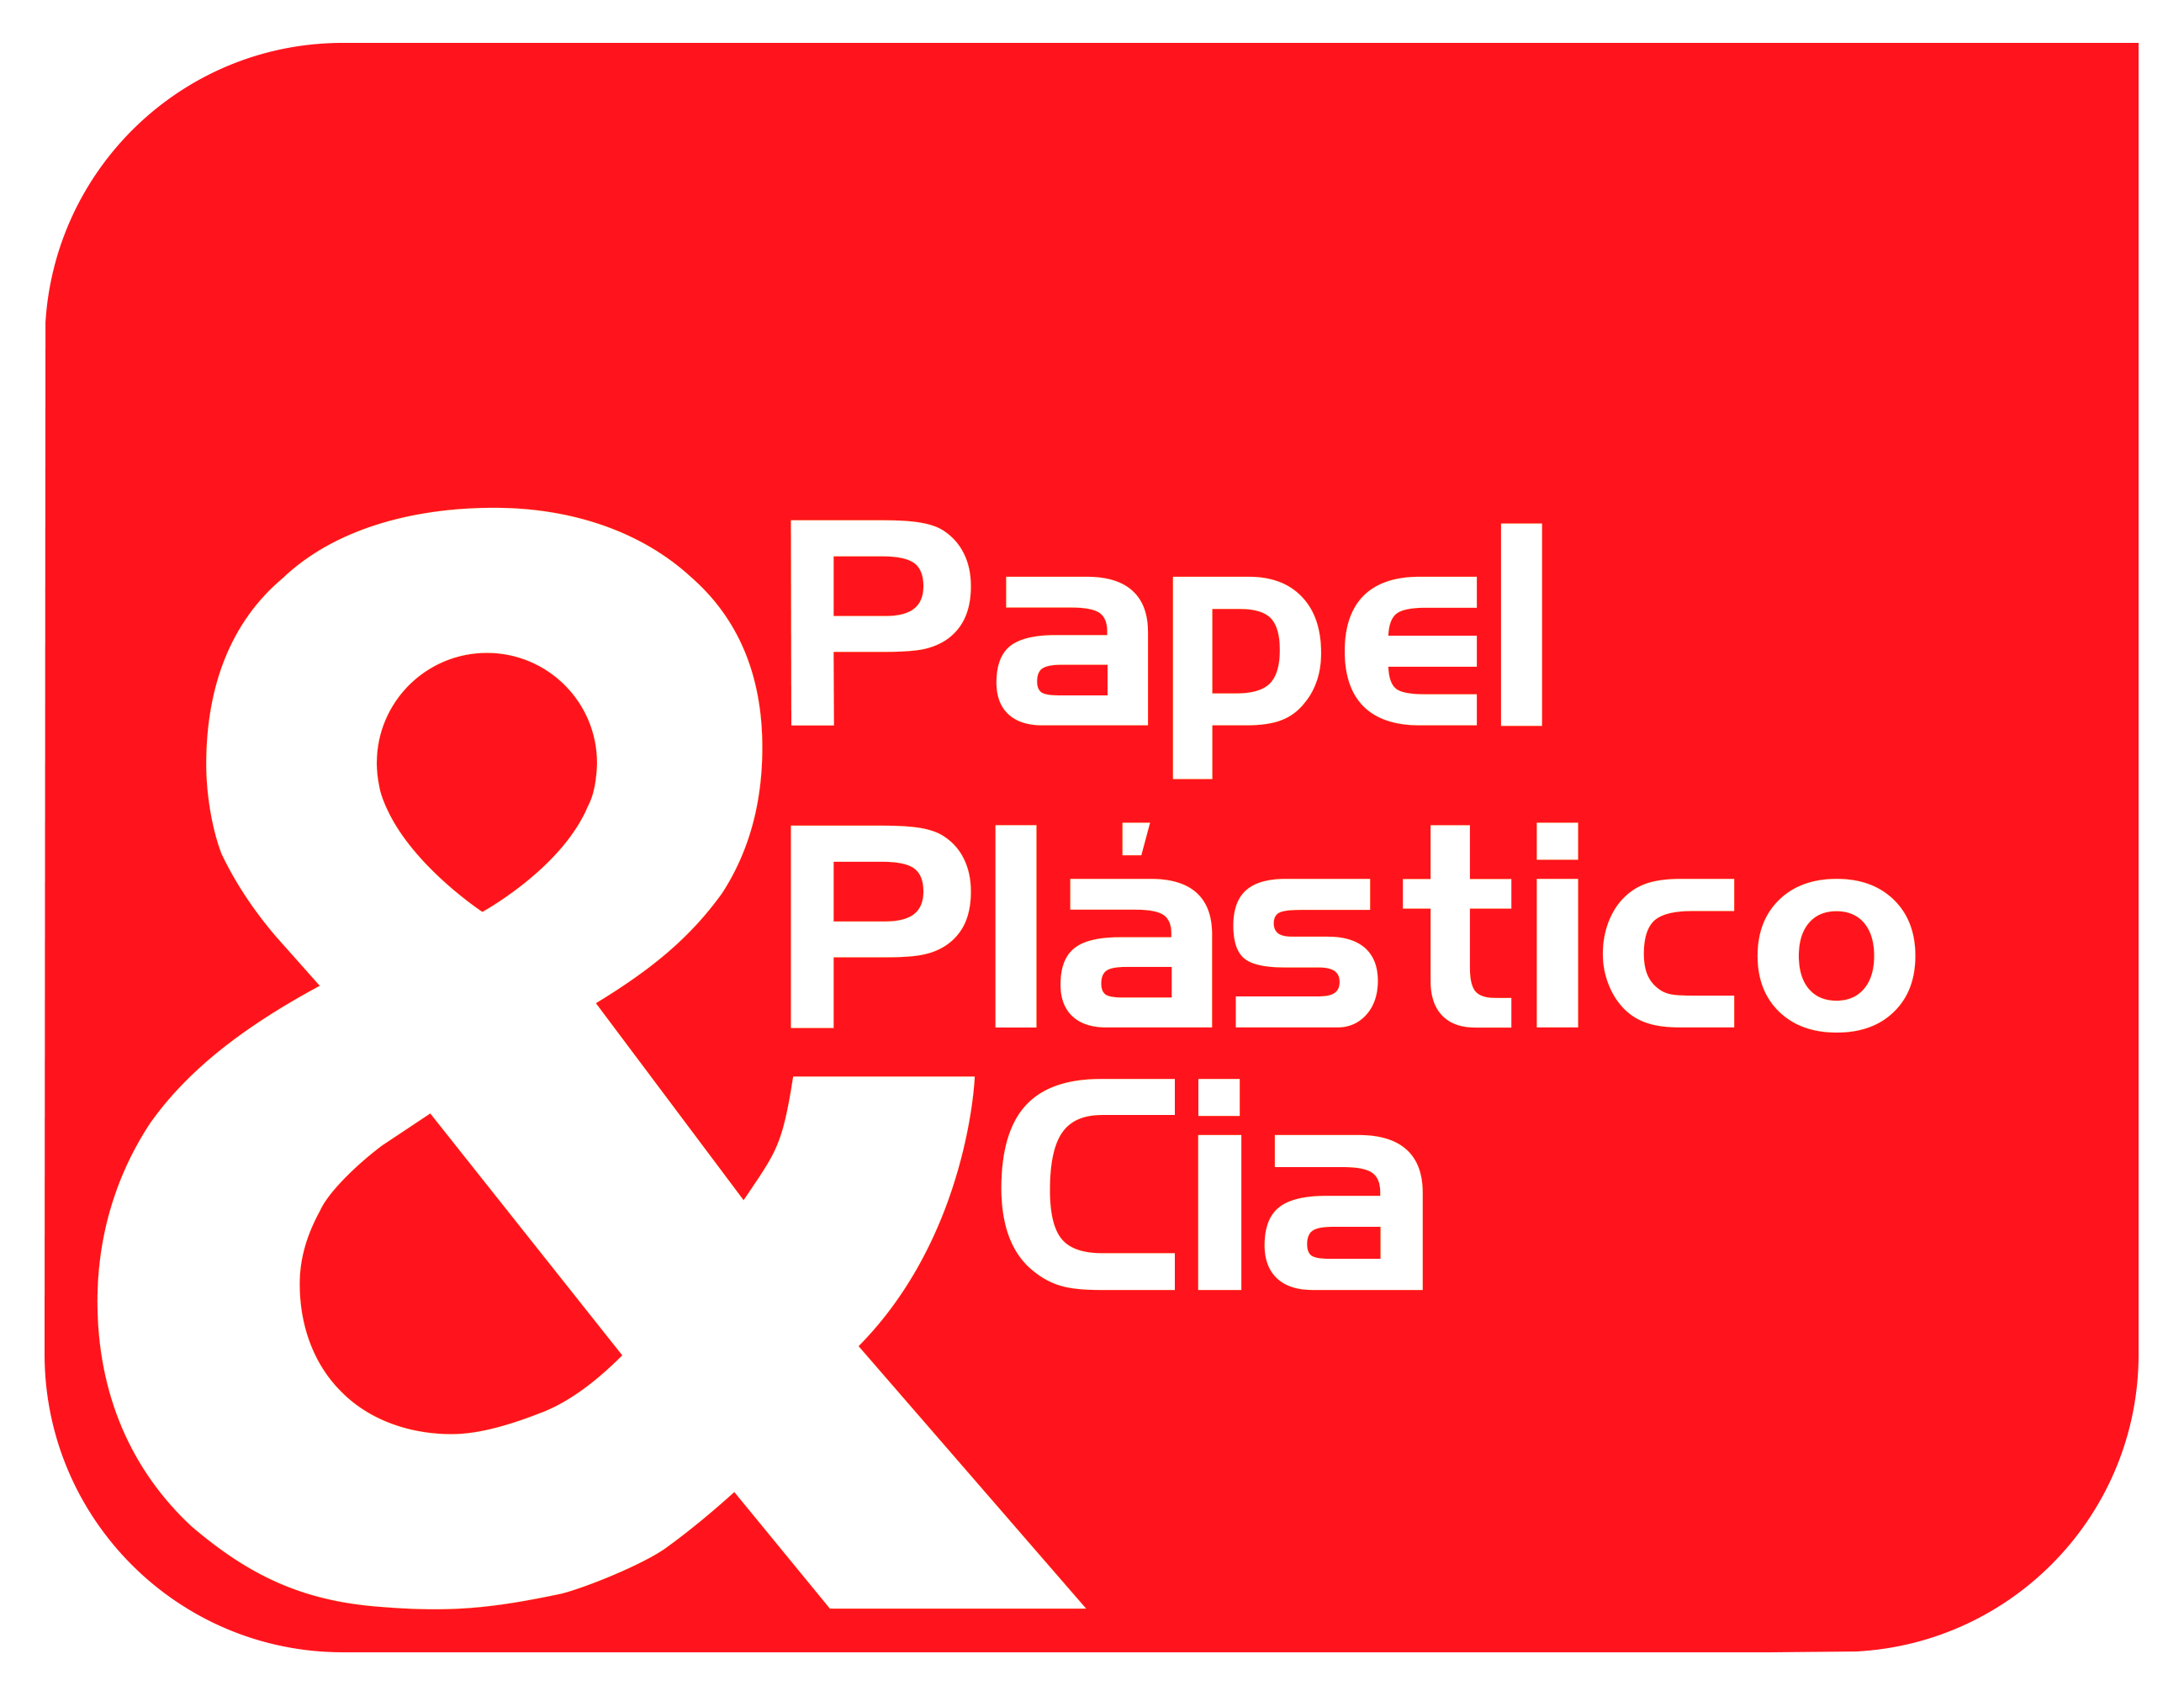 Papel Plástico & Cia